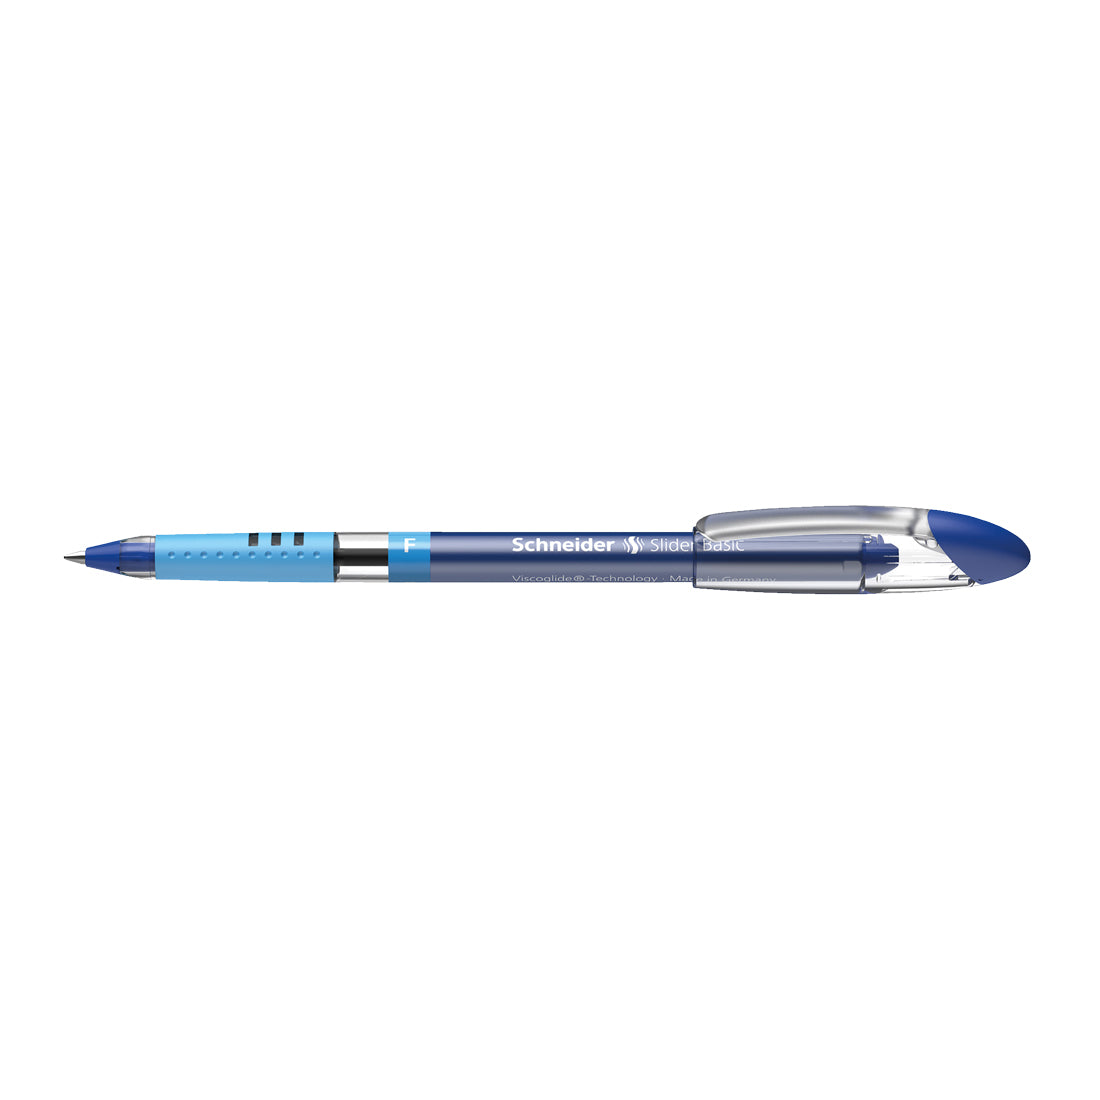 Slider BASIC Ballpoint Pens F, Box of 10#colour_blue